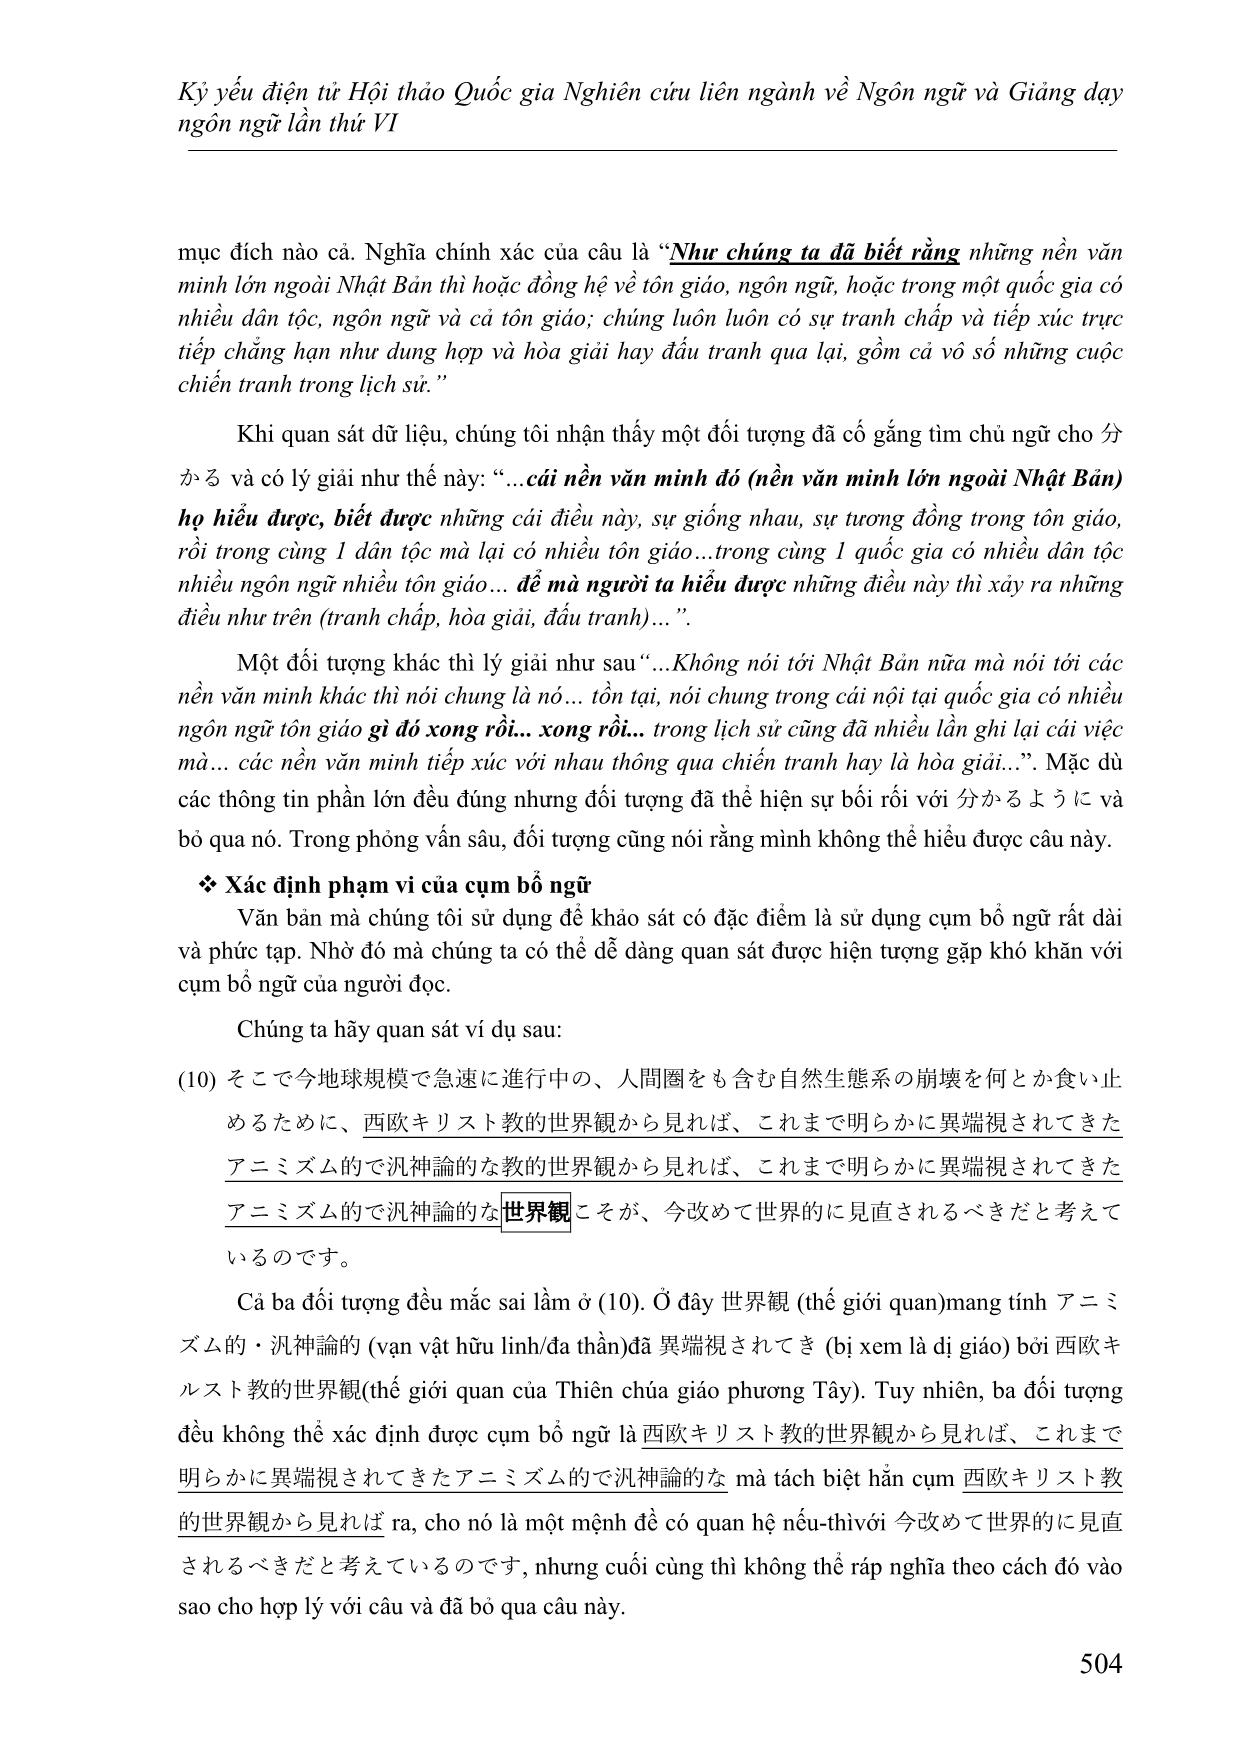 Nghiên cứu các lỗi thường gặp của người học Việt Nam ở trình độ cao cấp khi đọc hiểu văn bản tiếng Nhật trang 9